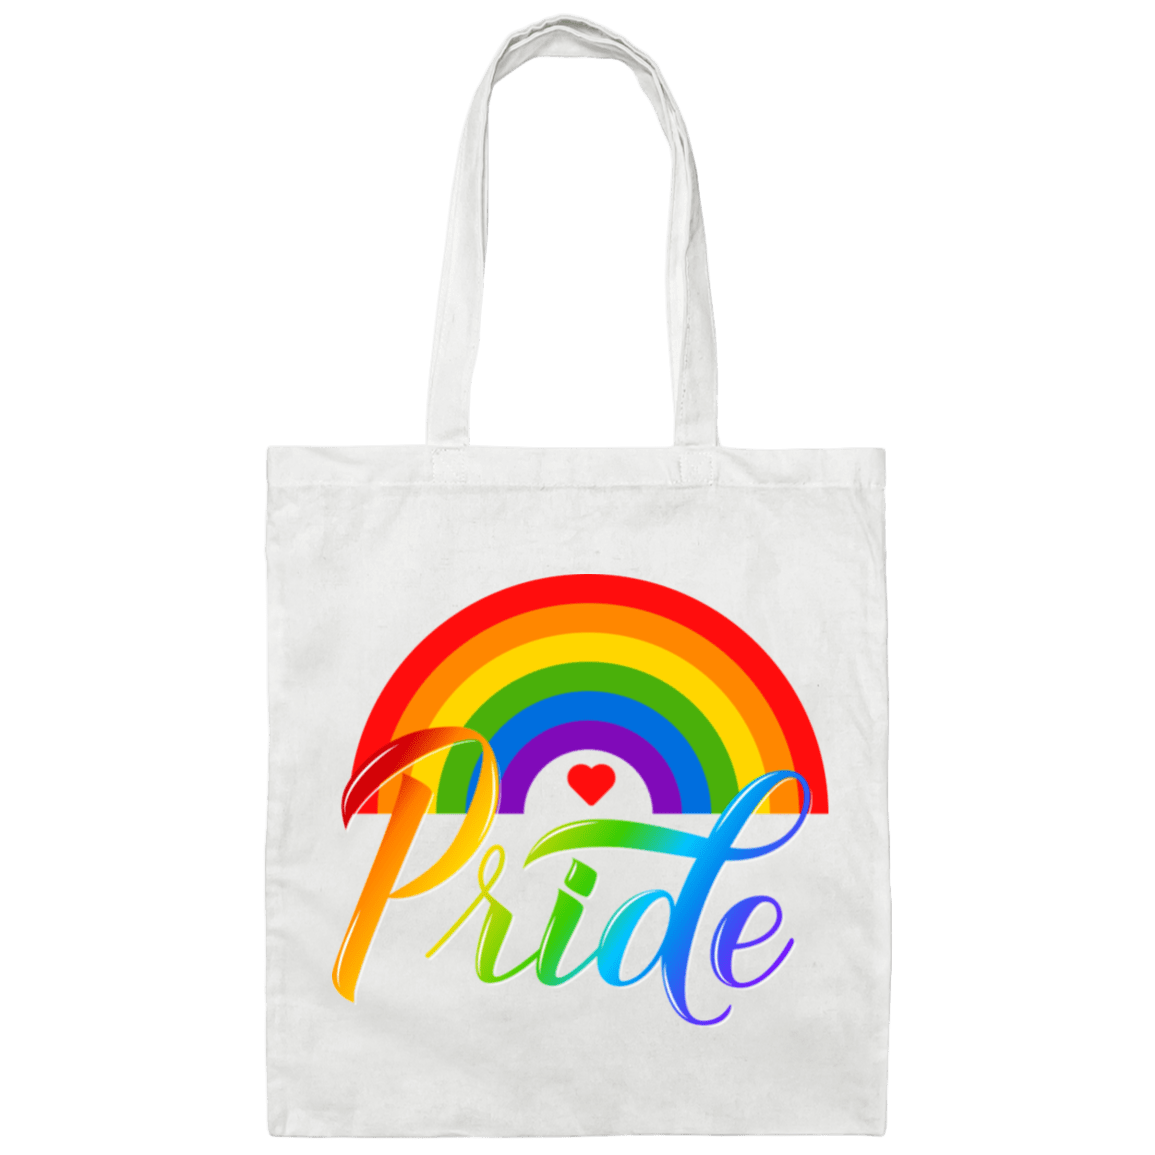 Pride Canvas Tote Bag